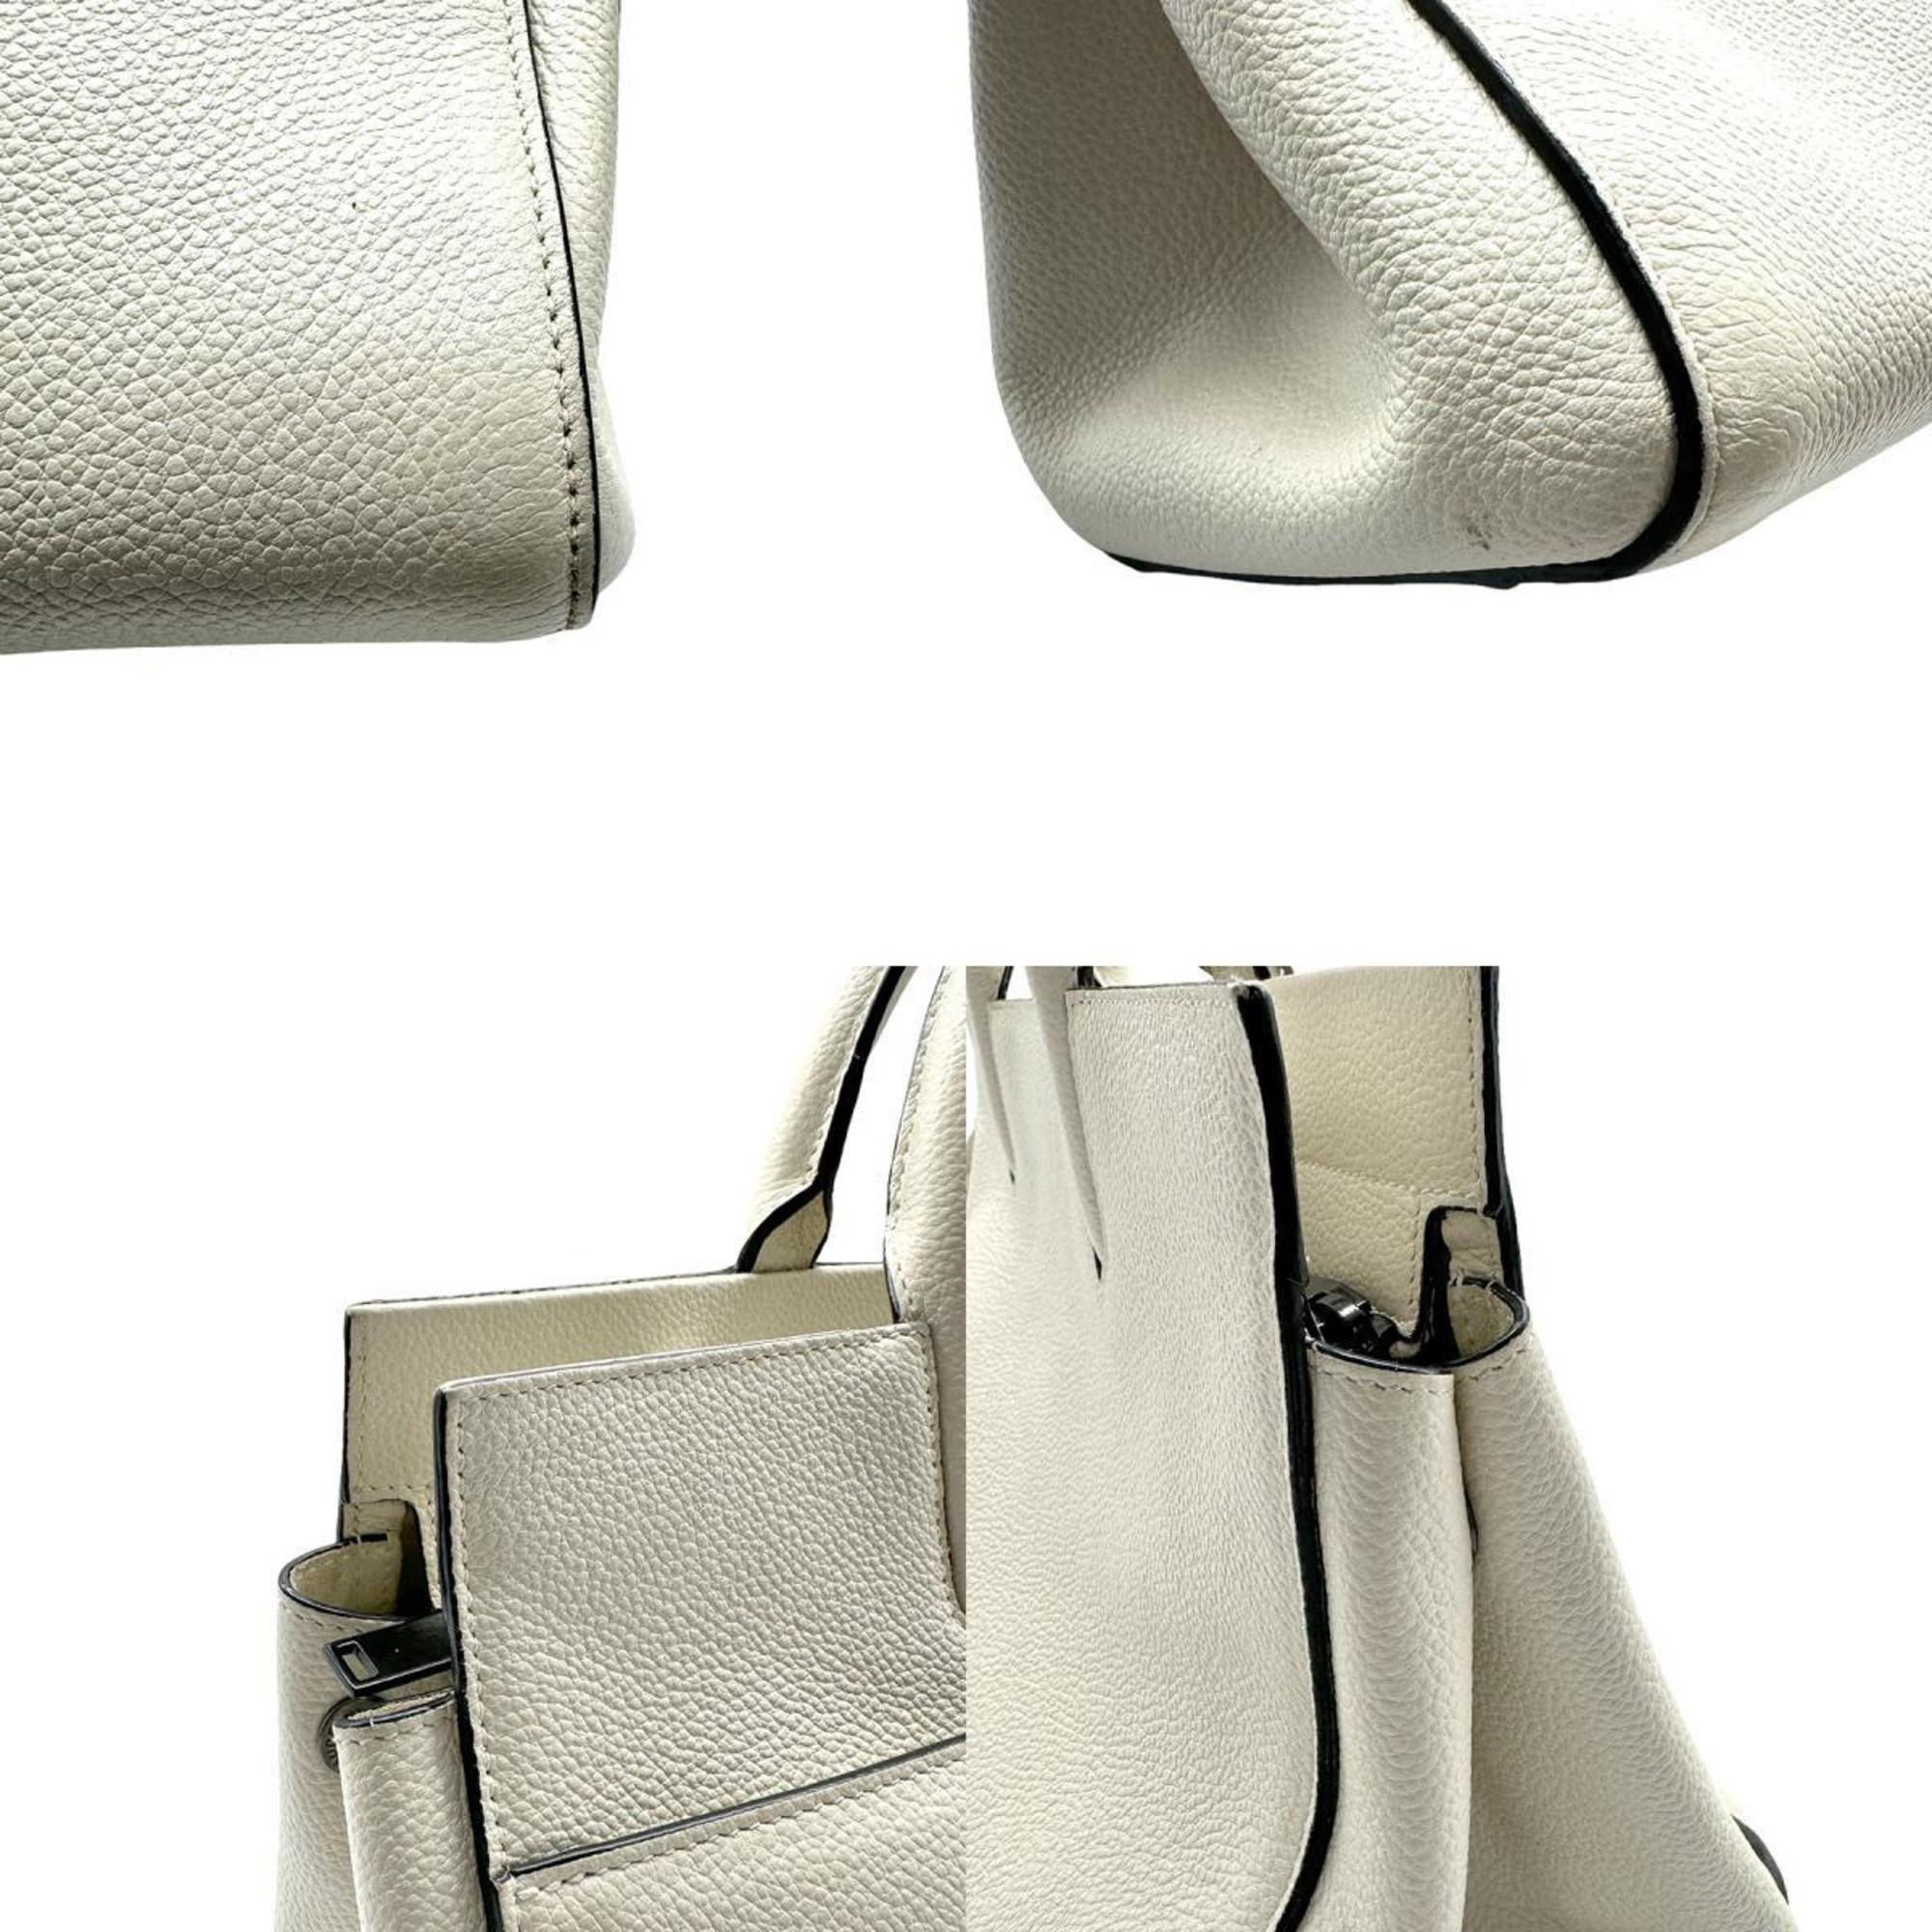 Saint Laurent SAINT LAURENT Handbag Shoulder Bag Cavalive Gauche Leather Off-White Women's z0510